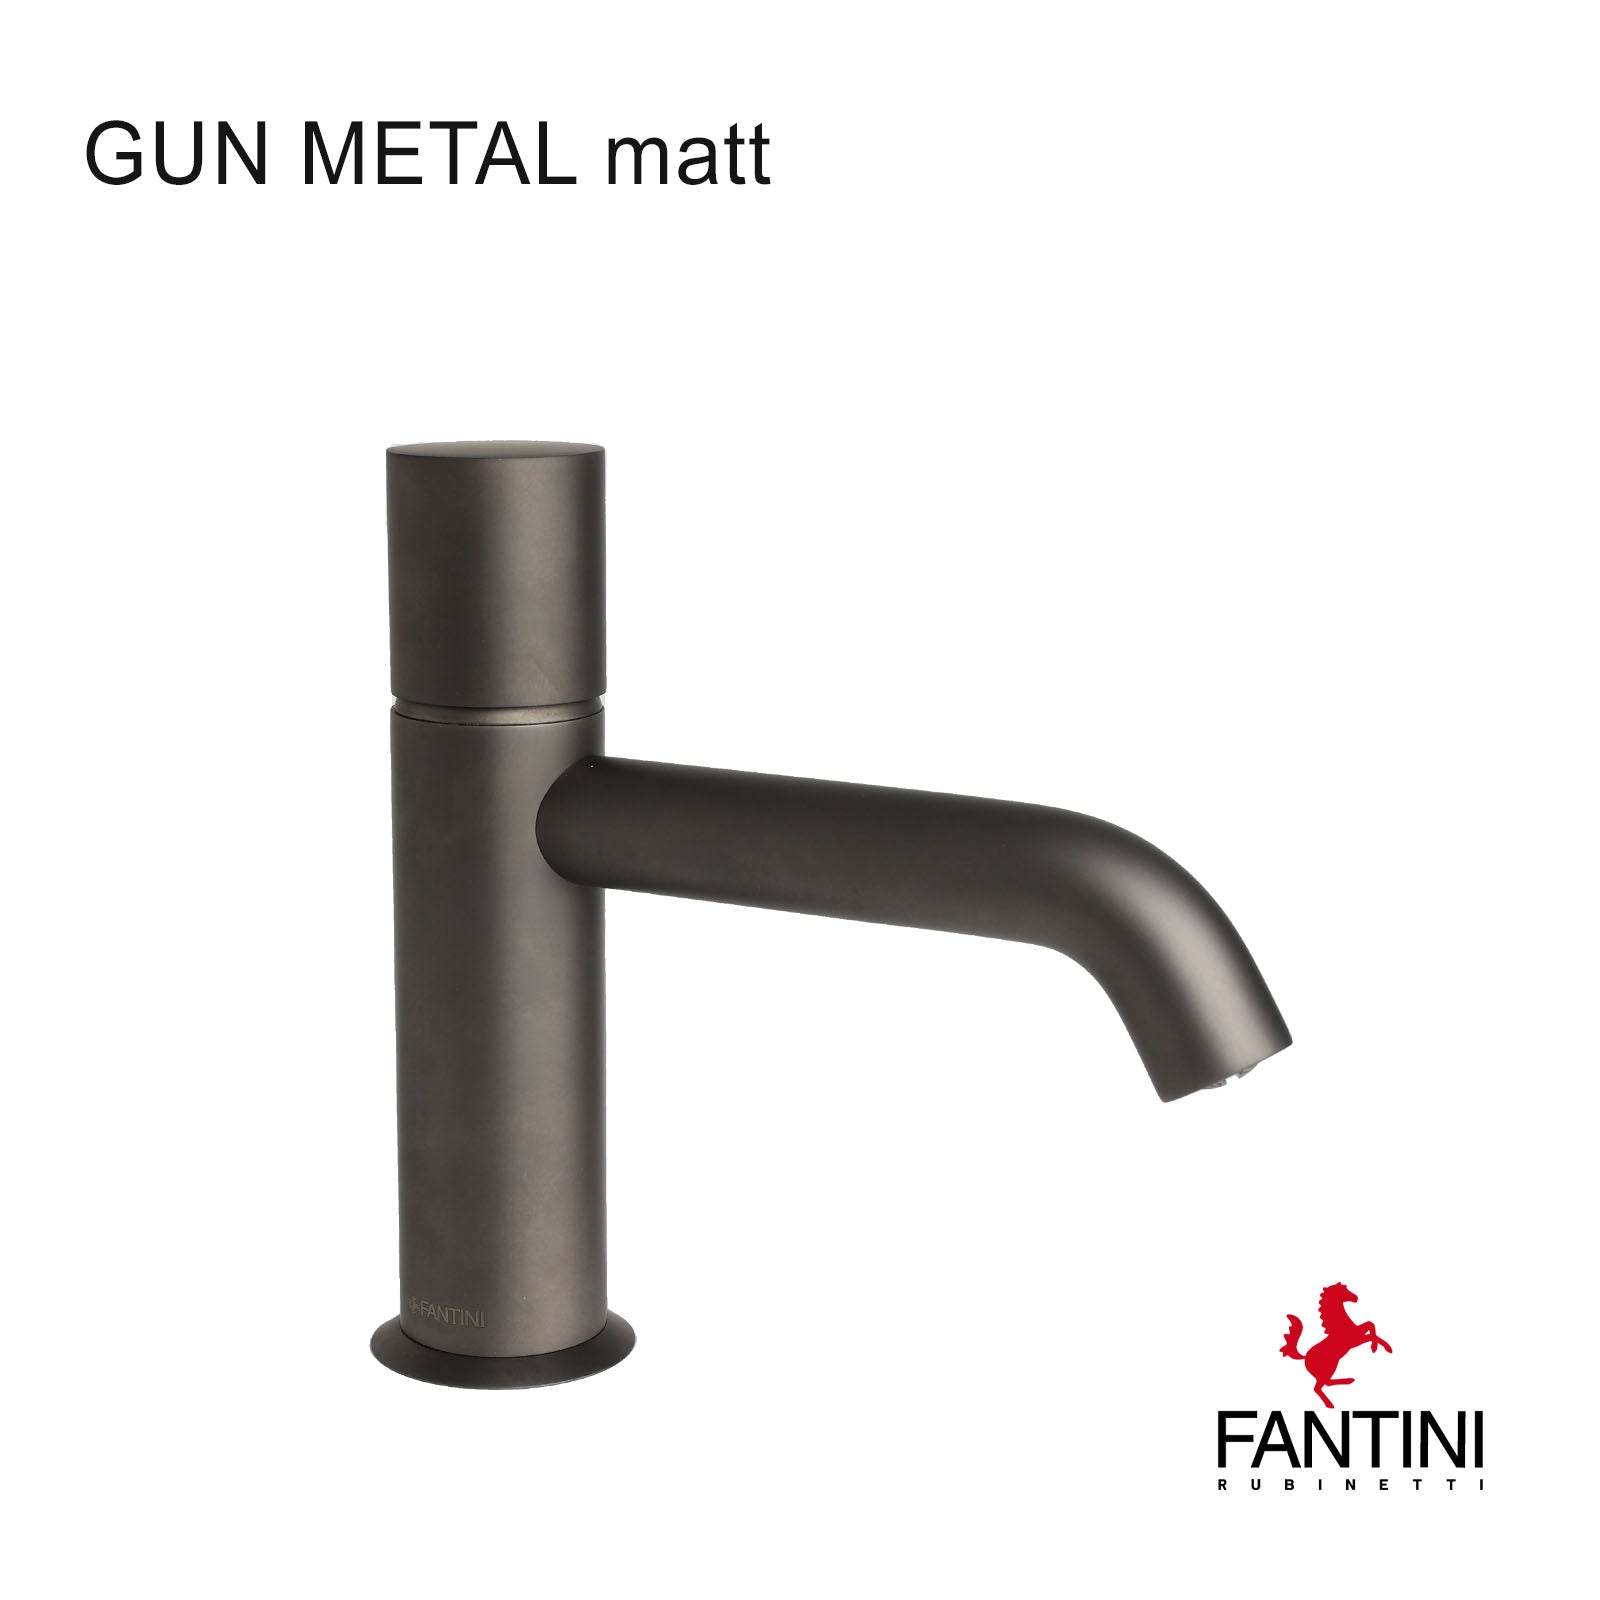 Waschtischmischer Fantini Nostromo 50 P5 E903WF Gun Metal matt PVD